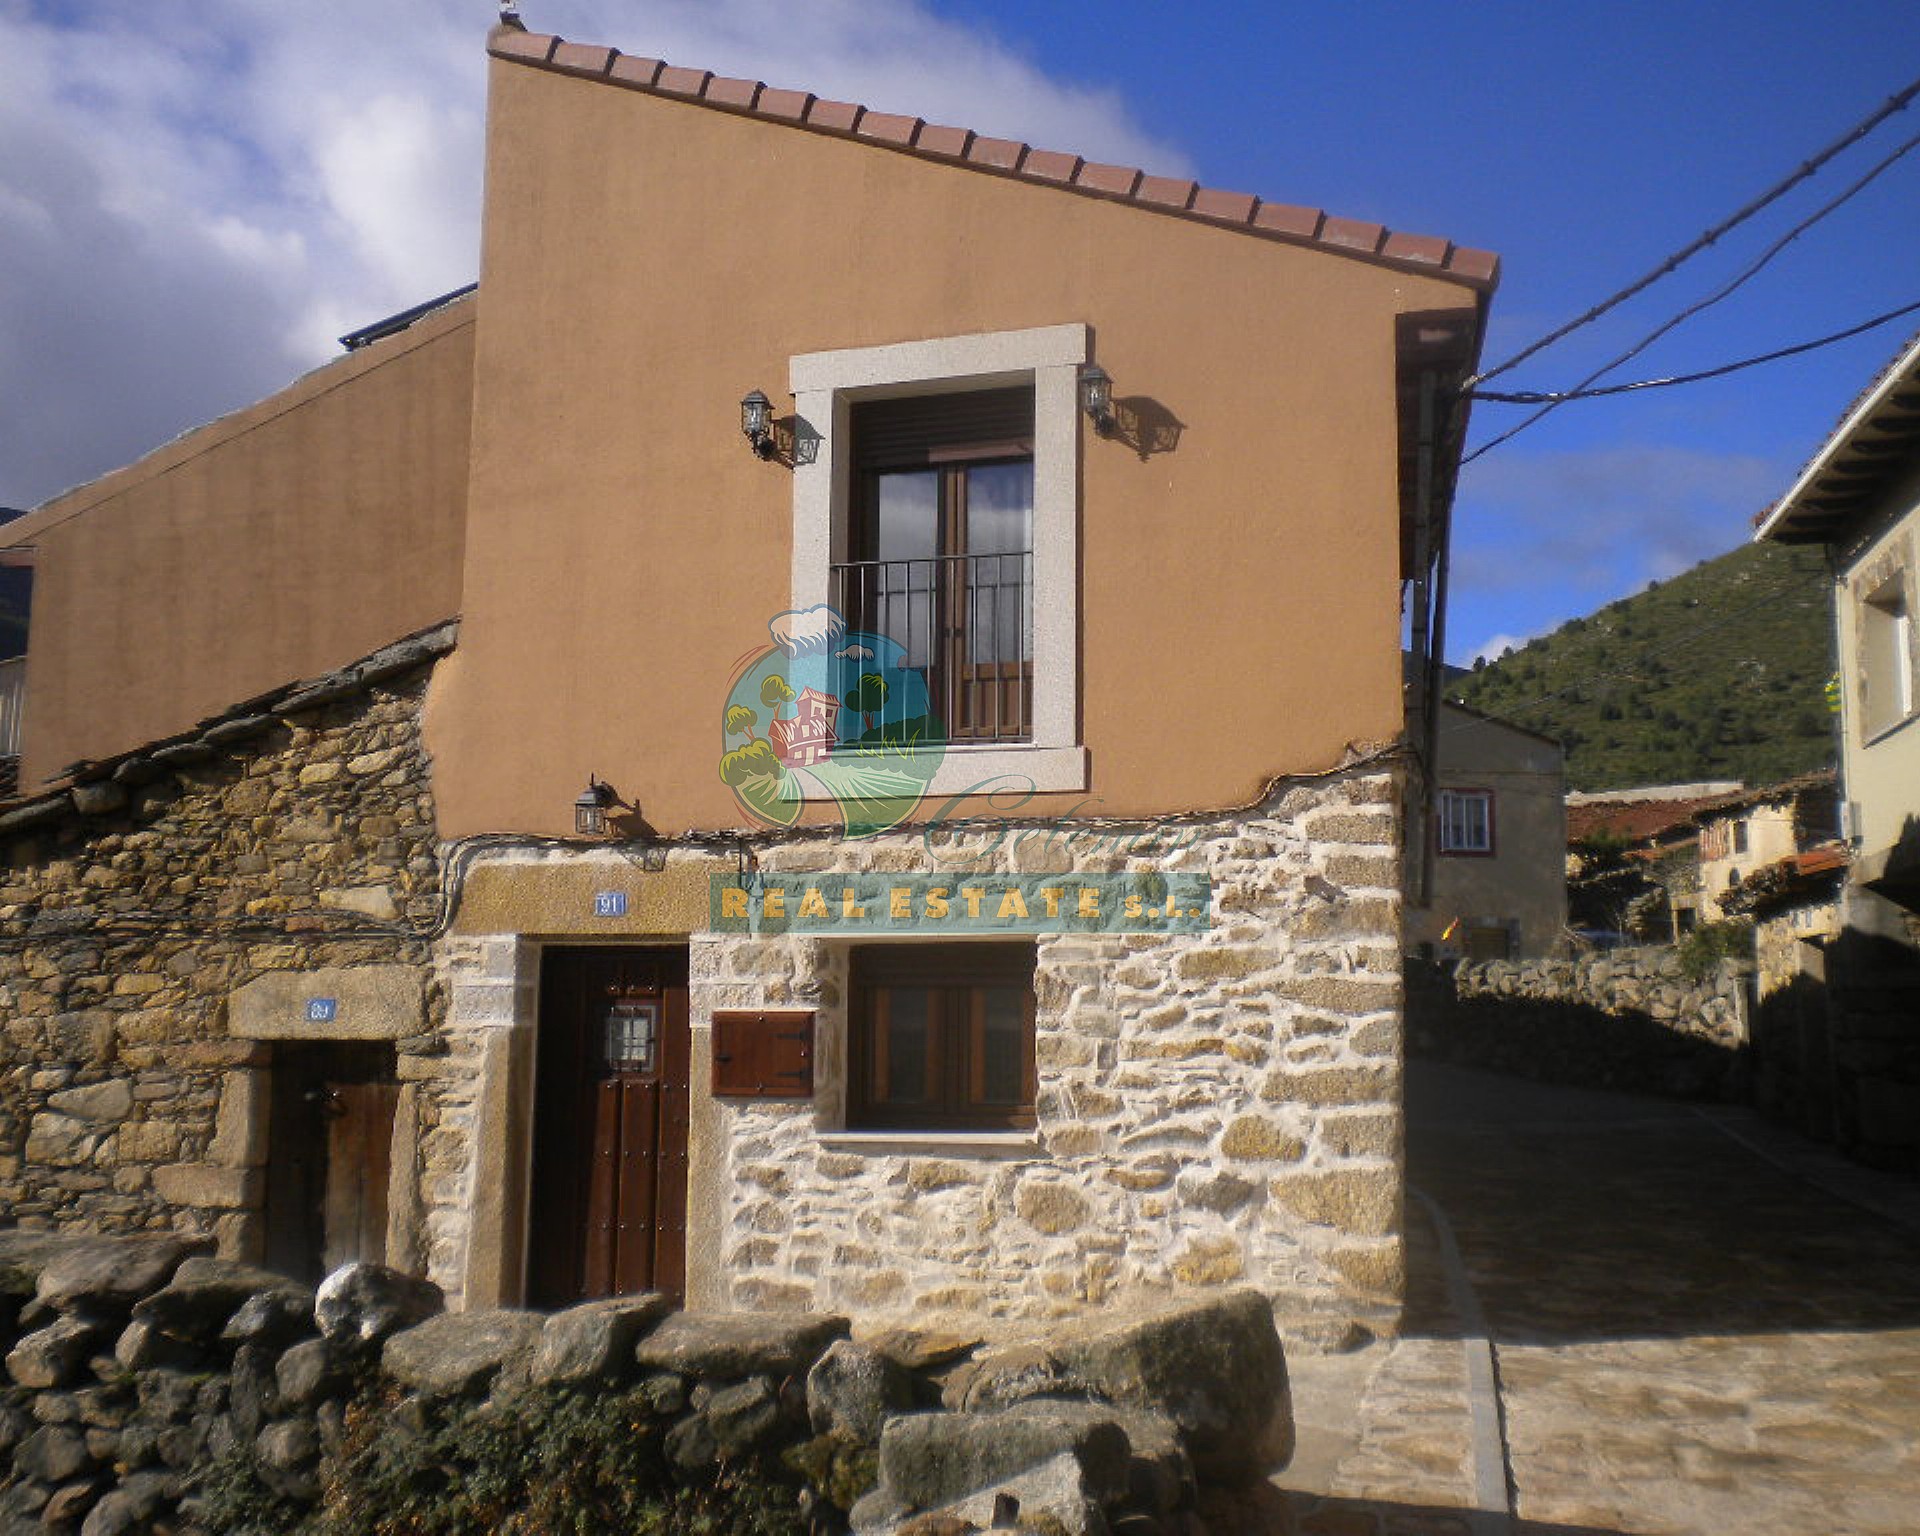 Casa con encanto en Sierra de Gredos.